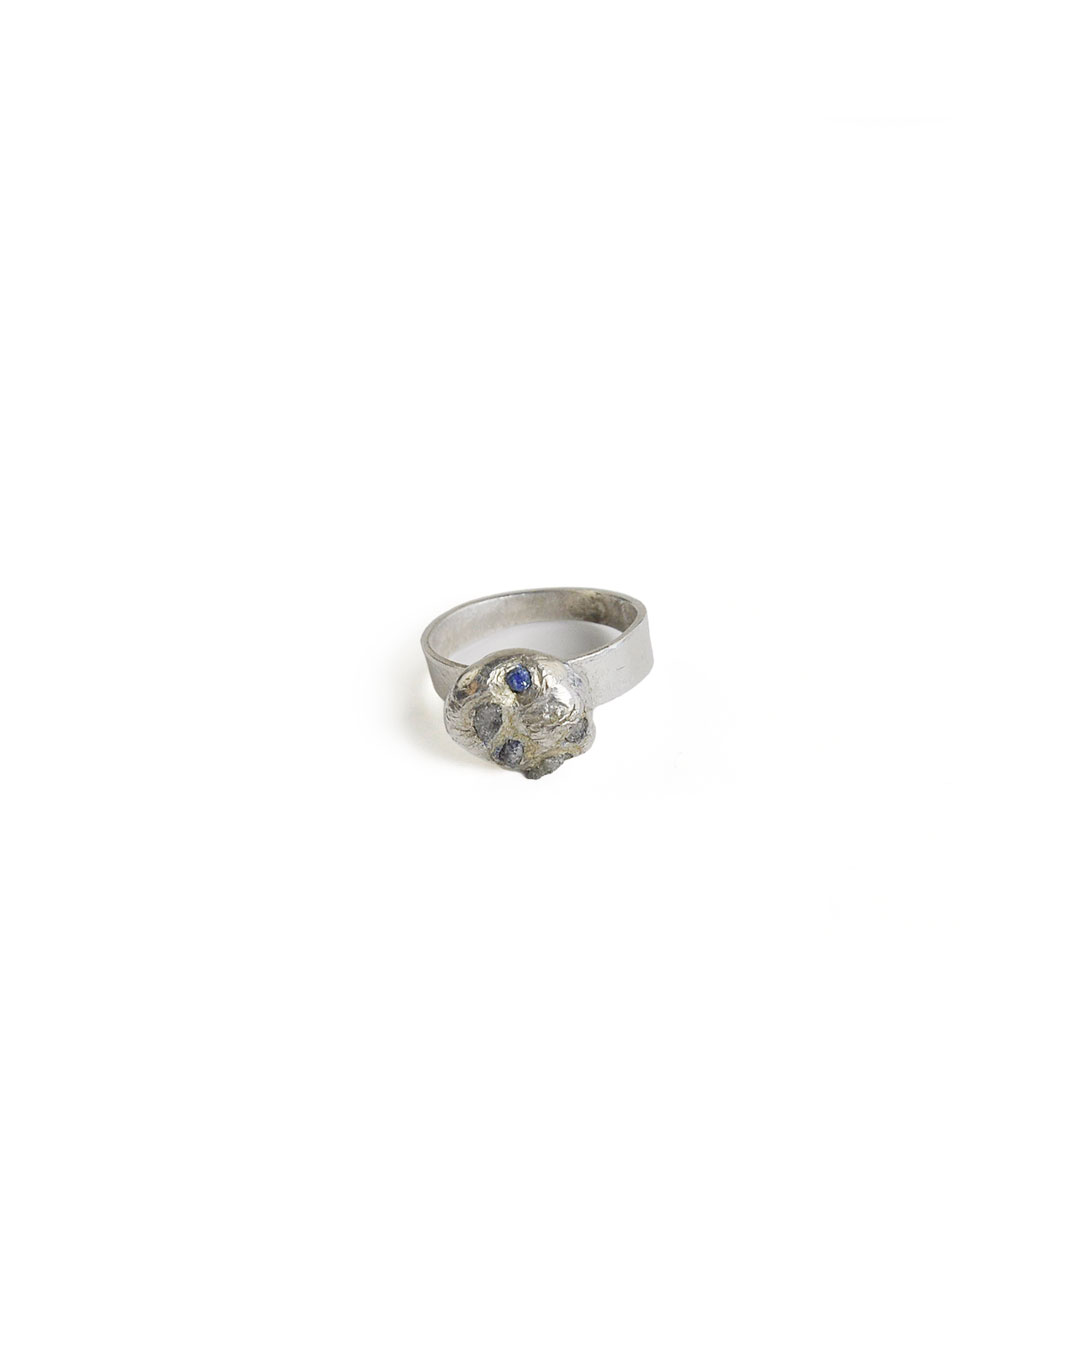 Rudolf Kocéa, zonder titel, 2014, ring; zilver, koper, ruwe diamanten, 25 x 10 mm, €730